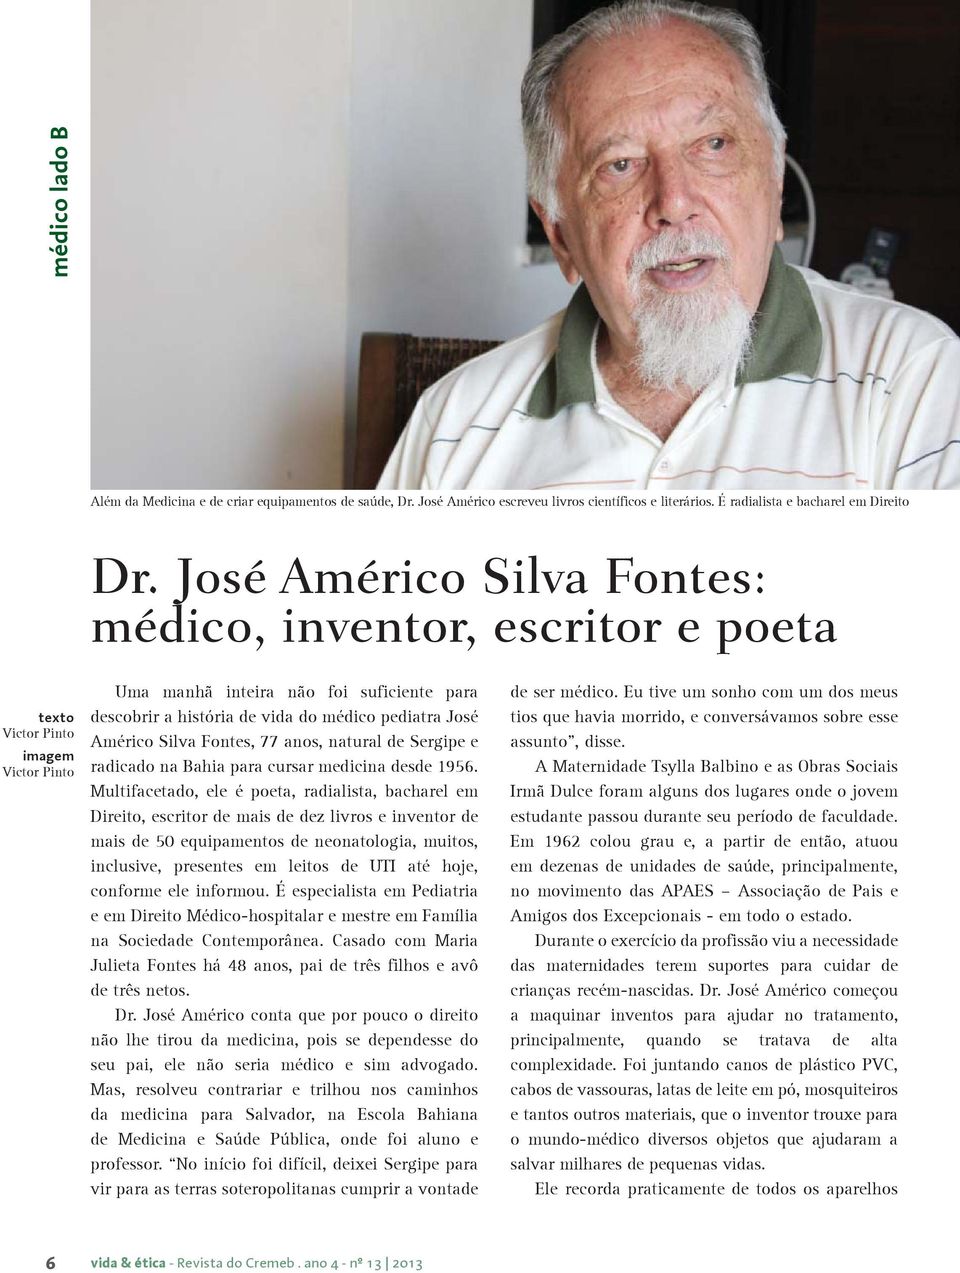 Américo Silva Fontes, 77 anos, natural de Sergipe e radicado na Bahia para cursar medicina desde 1956.